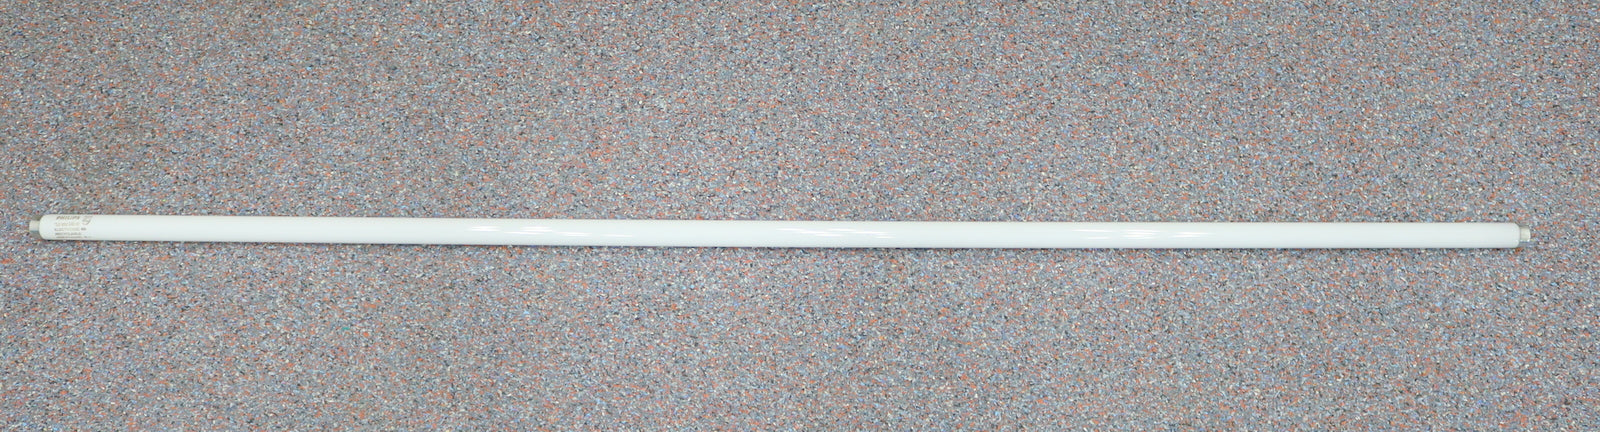 Bild des Artikels PHILIPS-25x-Leuchtstoffröhre-TLD50W/840-50W-Länge-150cm-kaltweiß-in-OVP